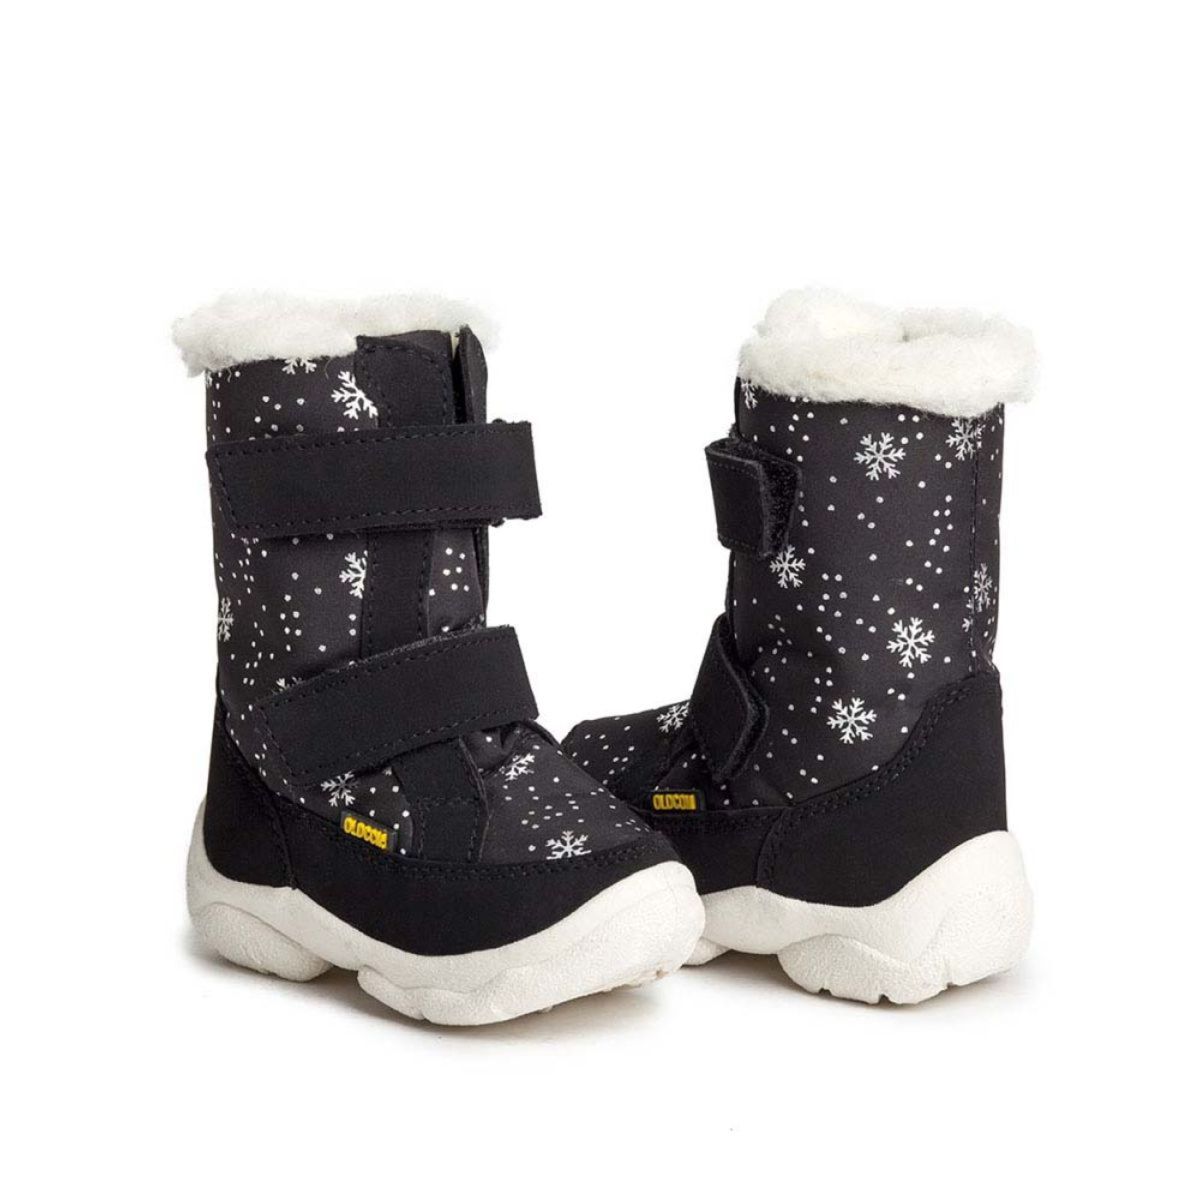 Дитячі чоботи-дутики зимові  ALASKA чорні з сніжинками